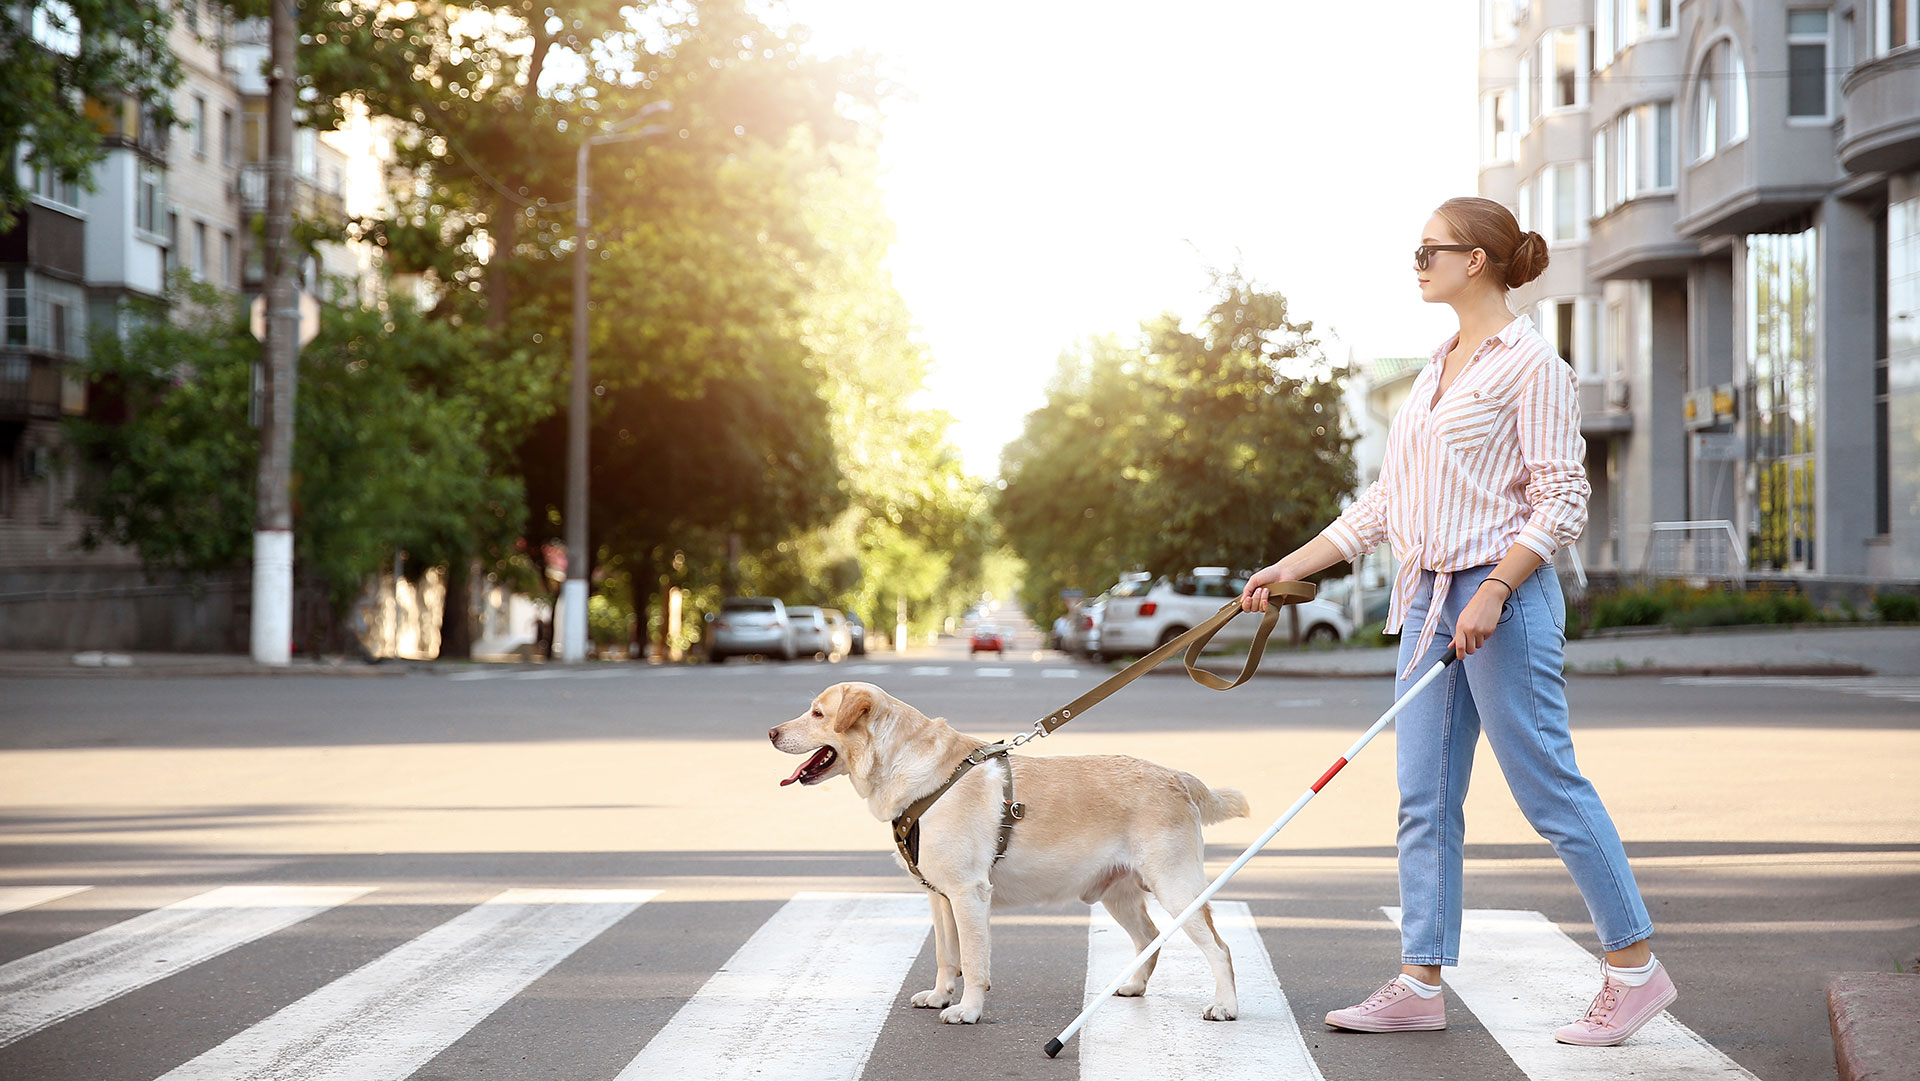 Femme non voyante avec son chien-guide © Pixel Shot / Shutterstock 1466396555